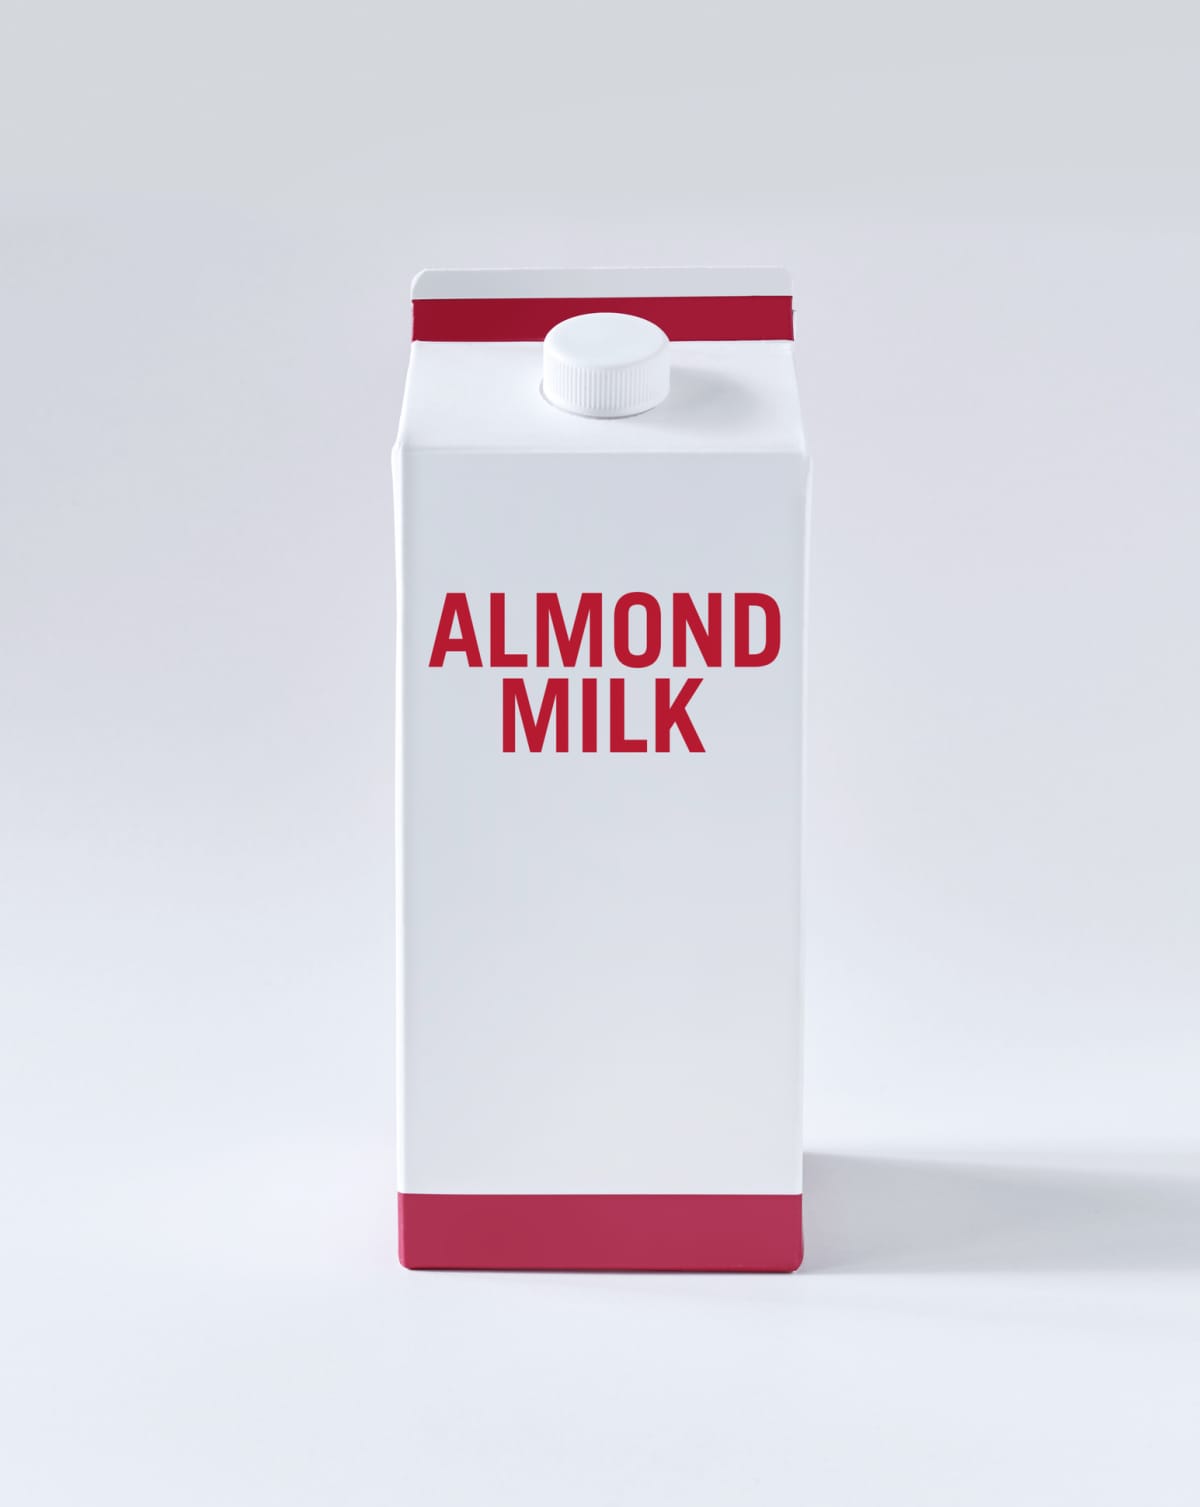 Almond milk carton on white background